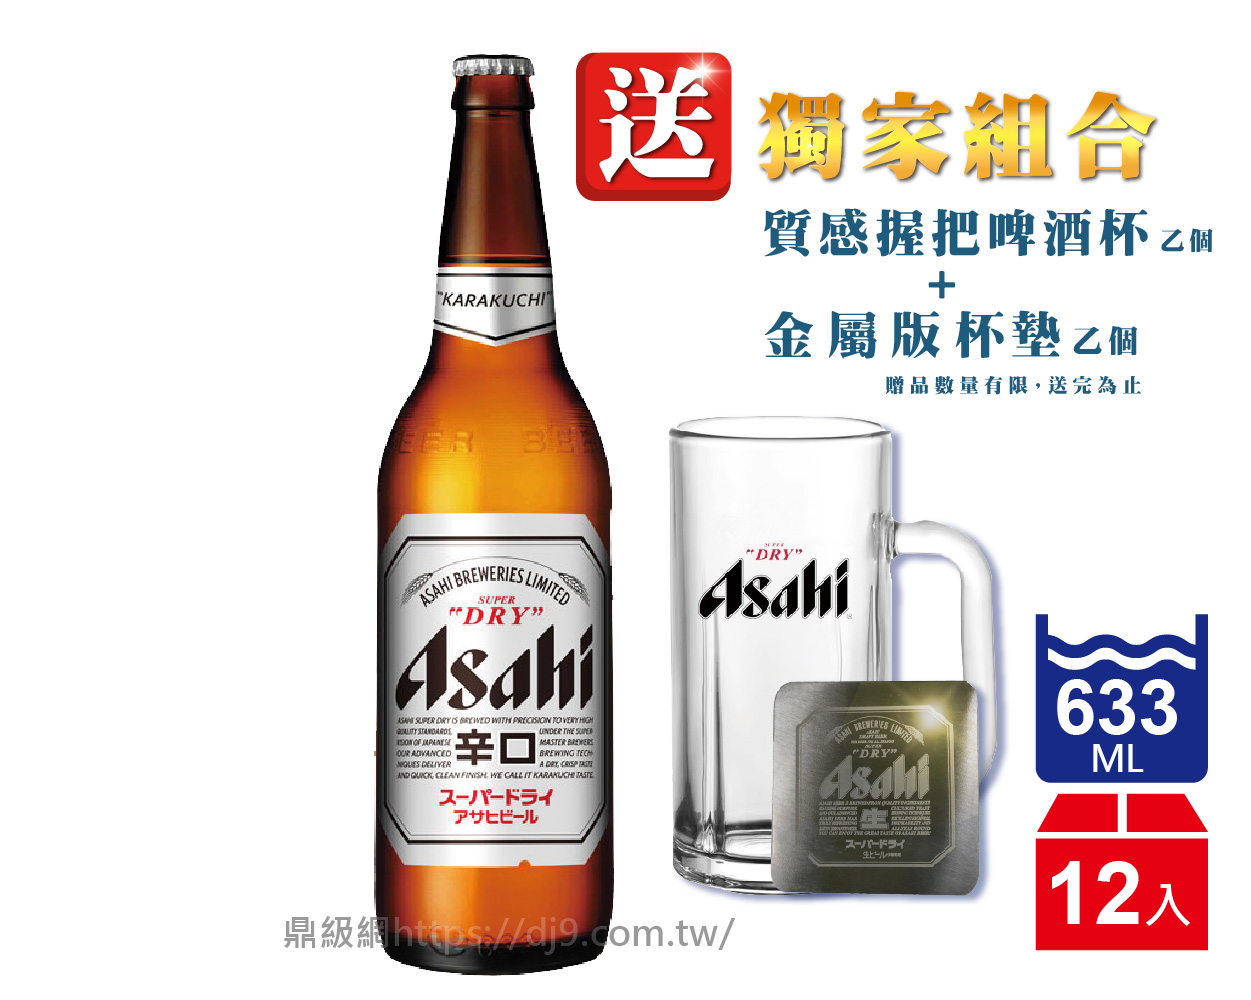 Asahi 朝日啤酒(633mlx12入-送獨家組合)